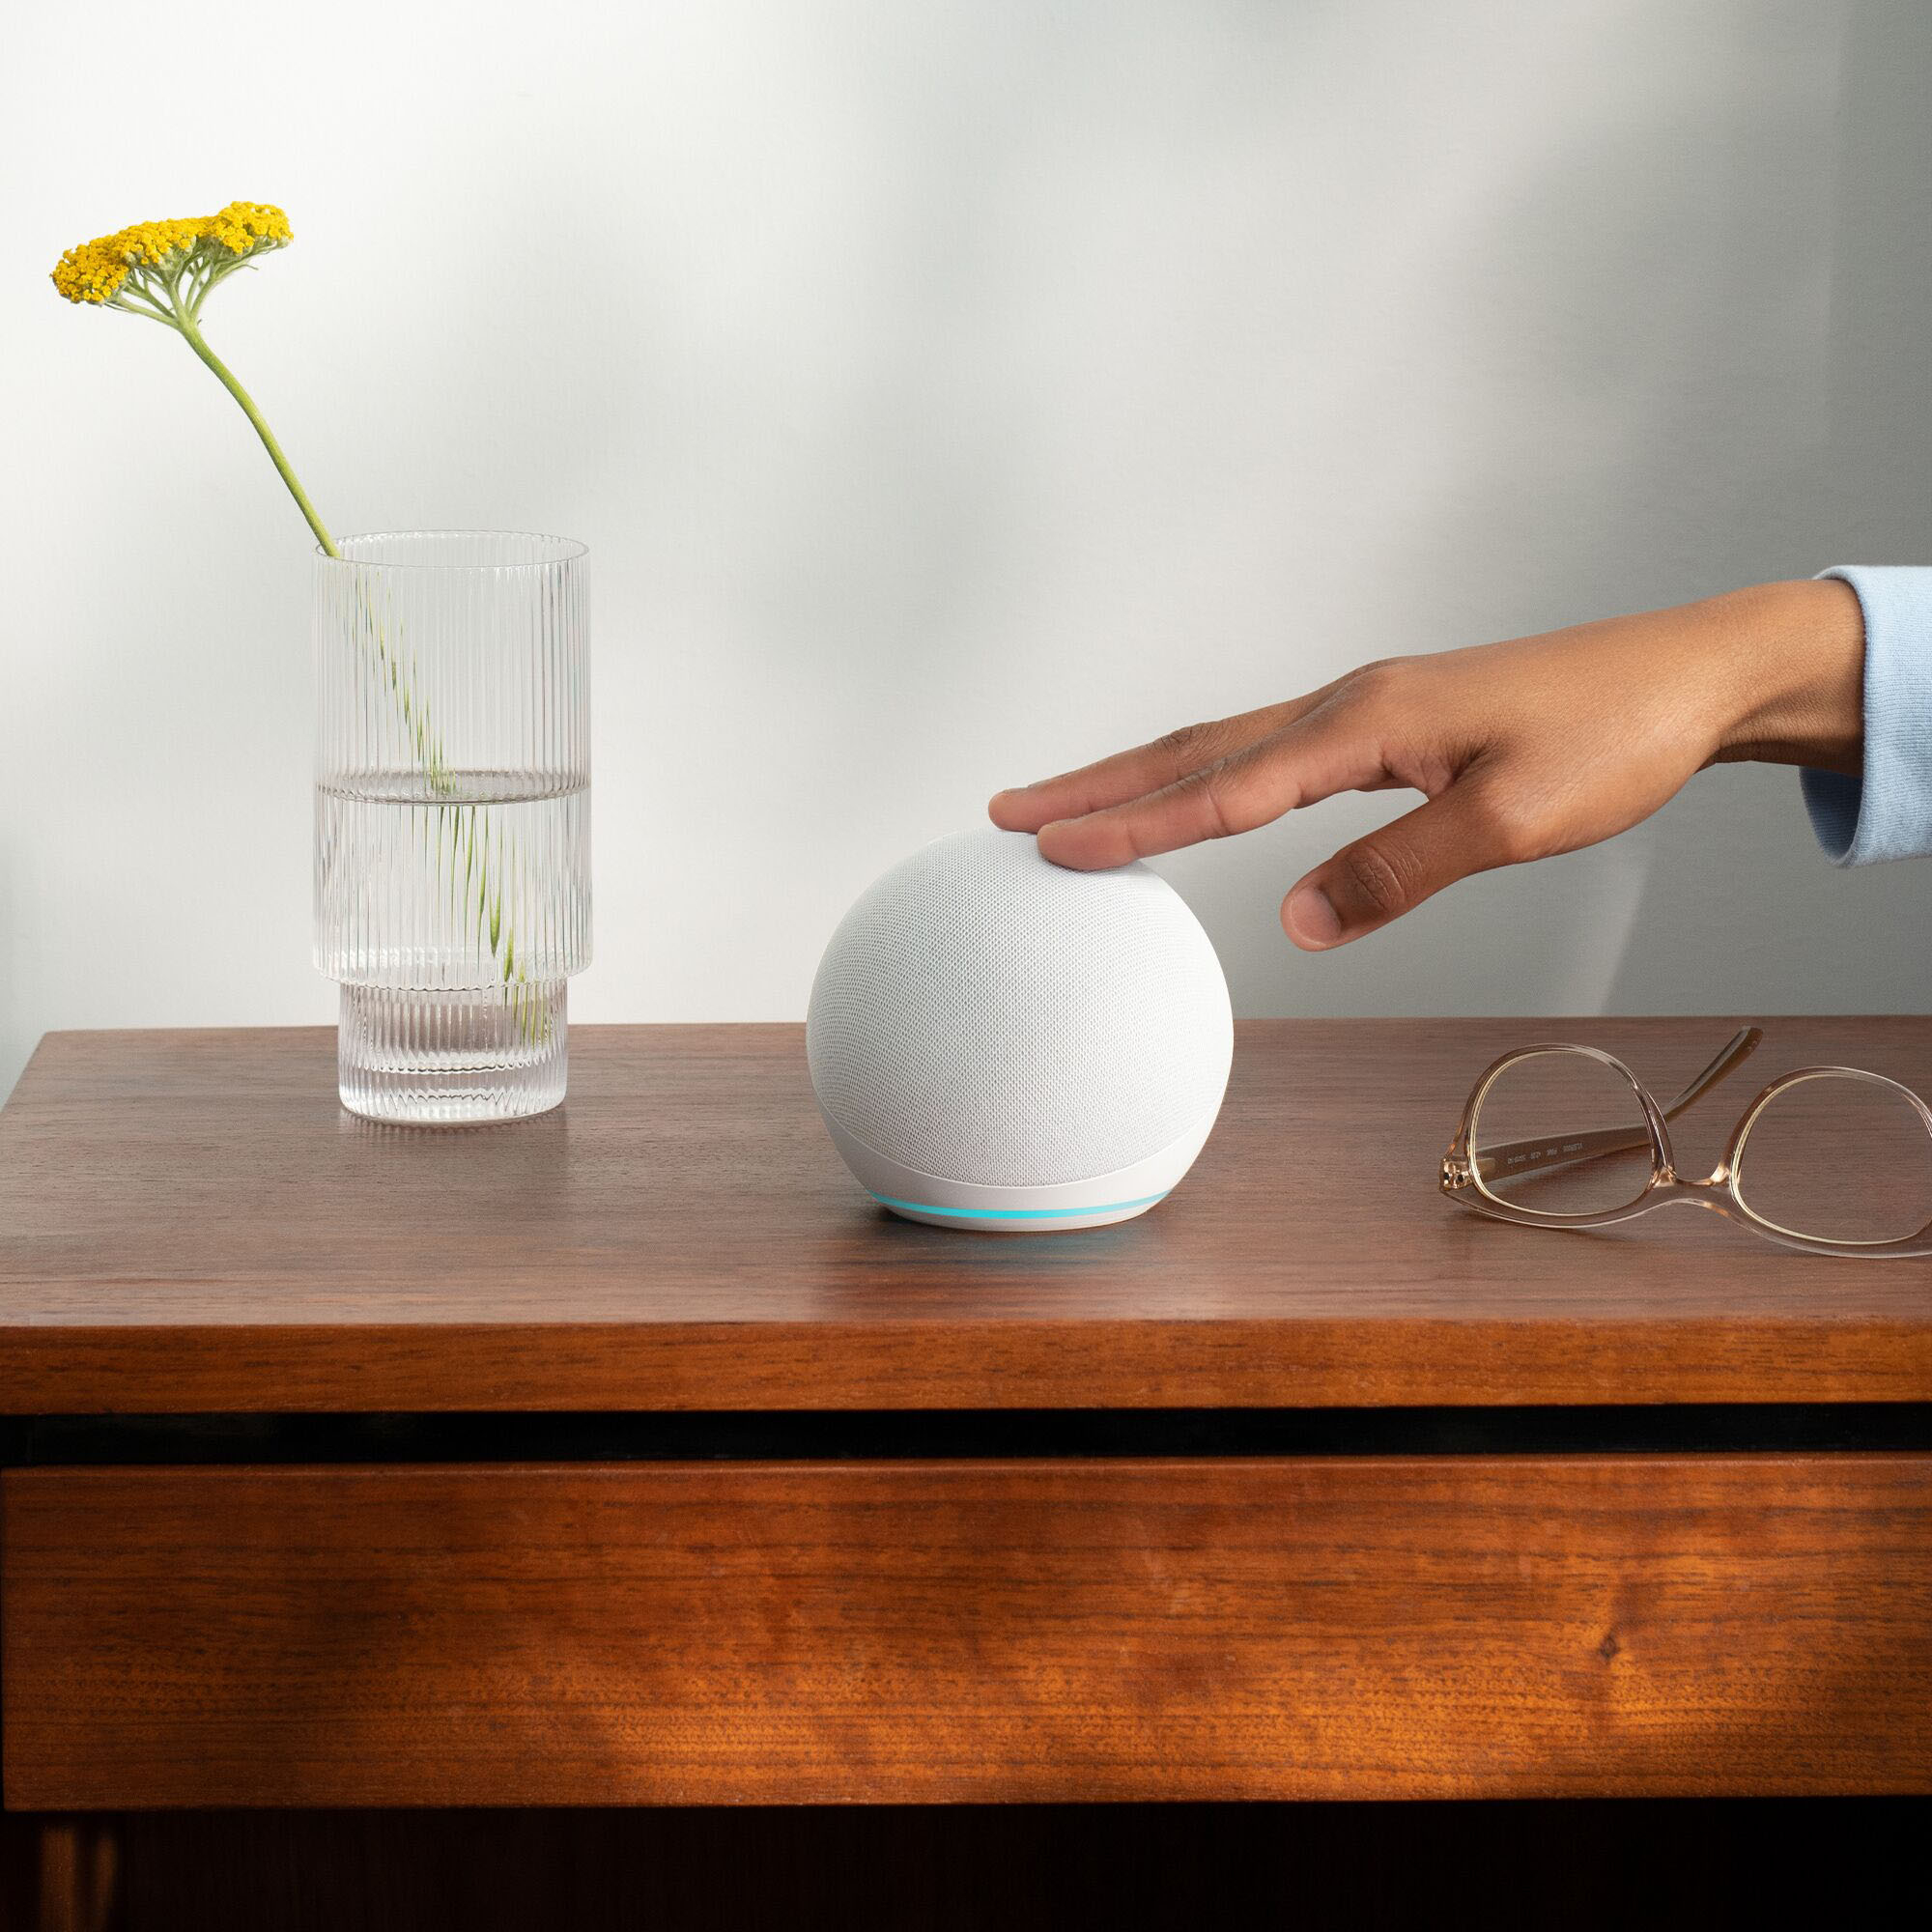 Echo Dot (5th Gen, 2022 Release) Smart Speaker with Alexa Deep Sea  Blue B09B93ZDG4 - Best Buy